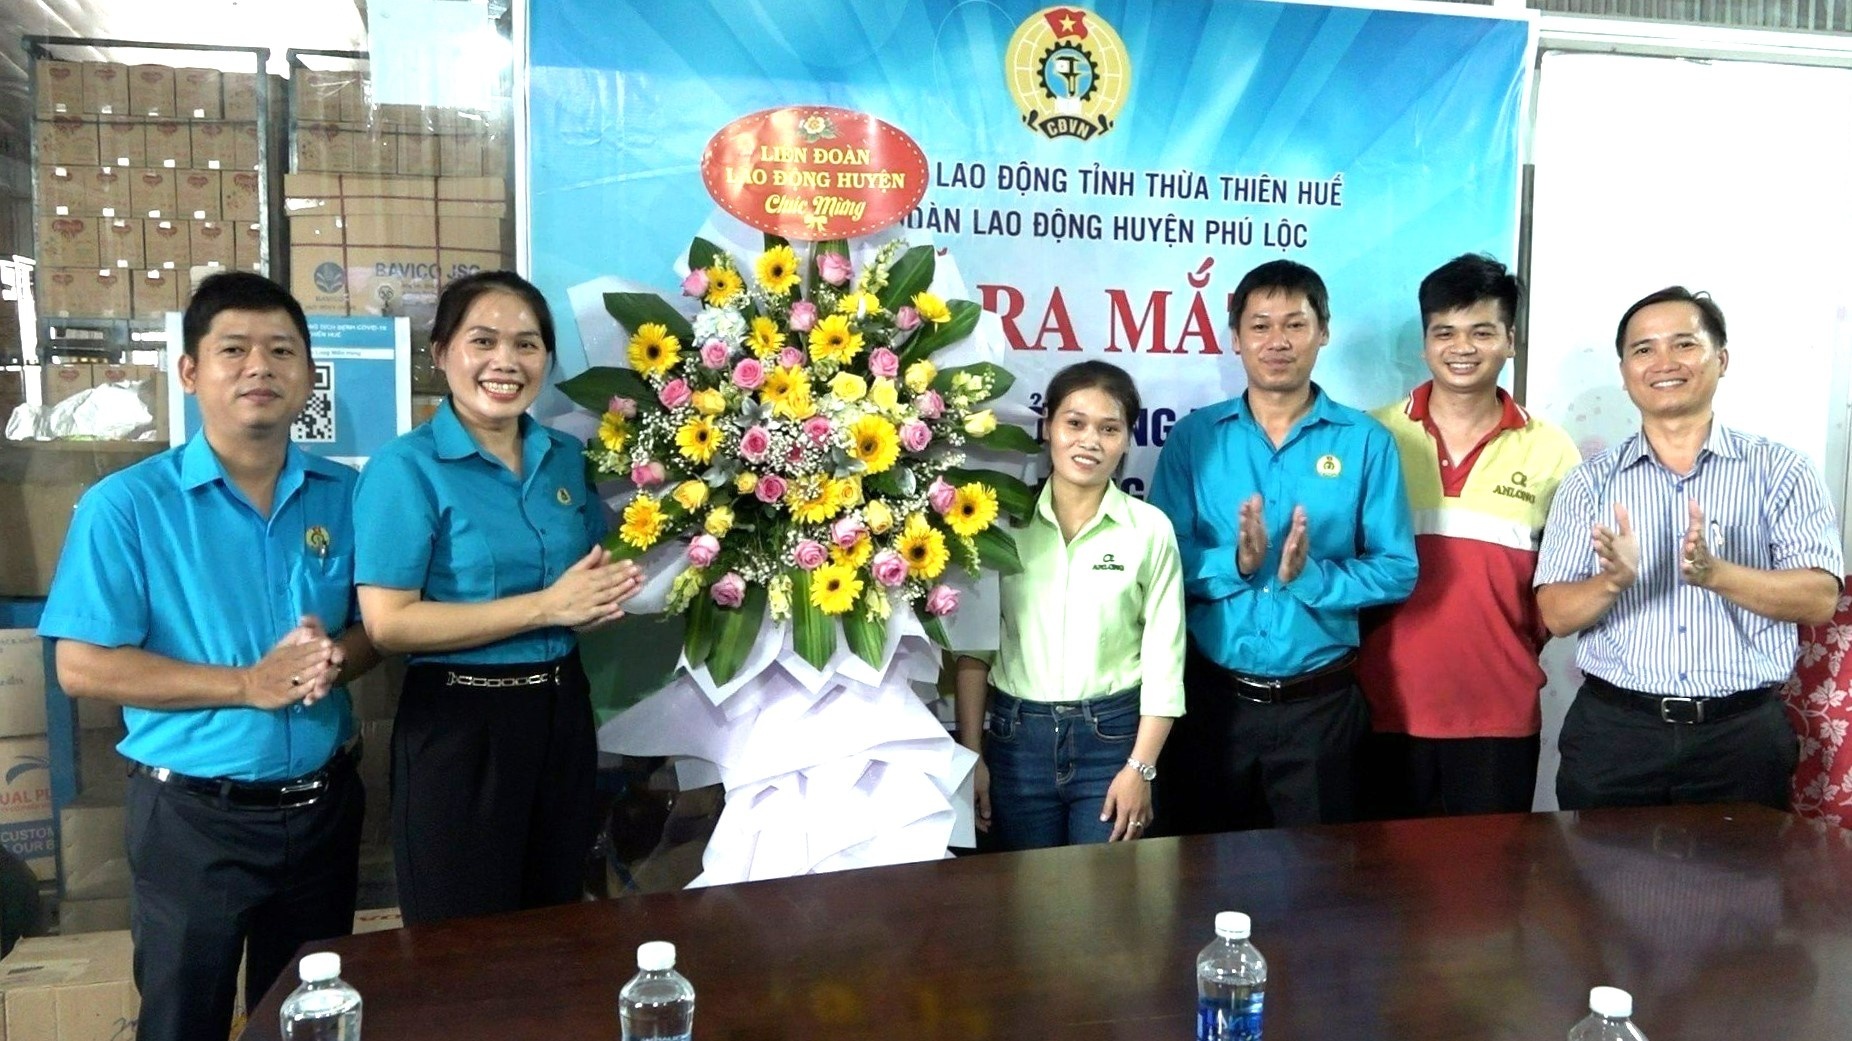 Công đoàn huyện Phú Lộc: Đẩy mạnh phát triển đoàn viên, thành lập công đoàn cơ sở